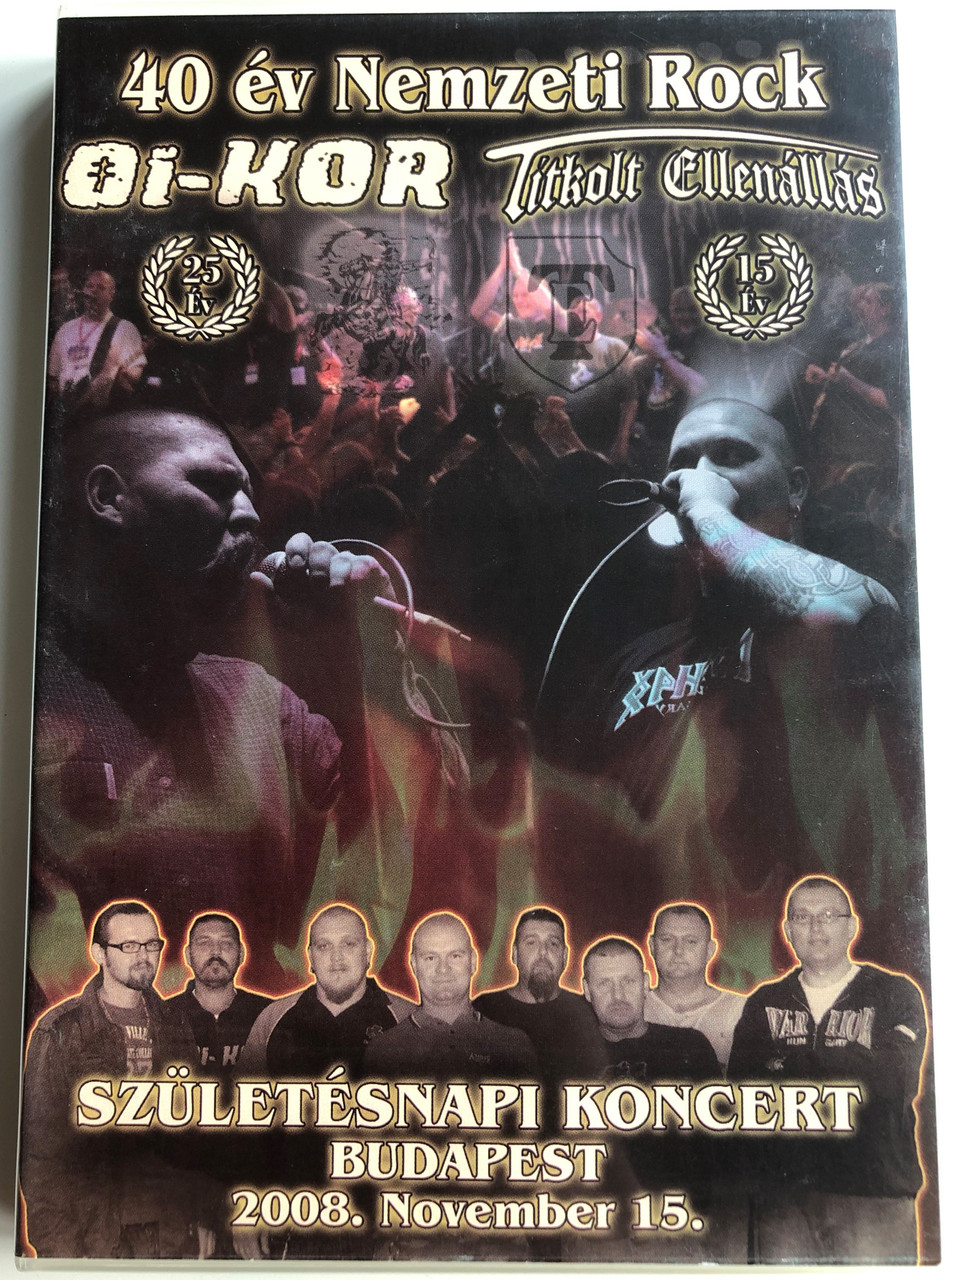 Titkolt Ellenállás 2DVD 2009 Oi-kor - 40 év Nemzeti Rock / Születésnapi  koncert Budapest / 2008. November 15 / Titkolt Records - TR DVD002 -  bibleinmylanguage